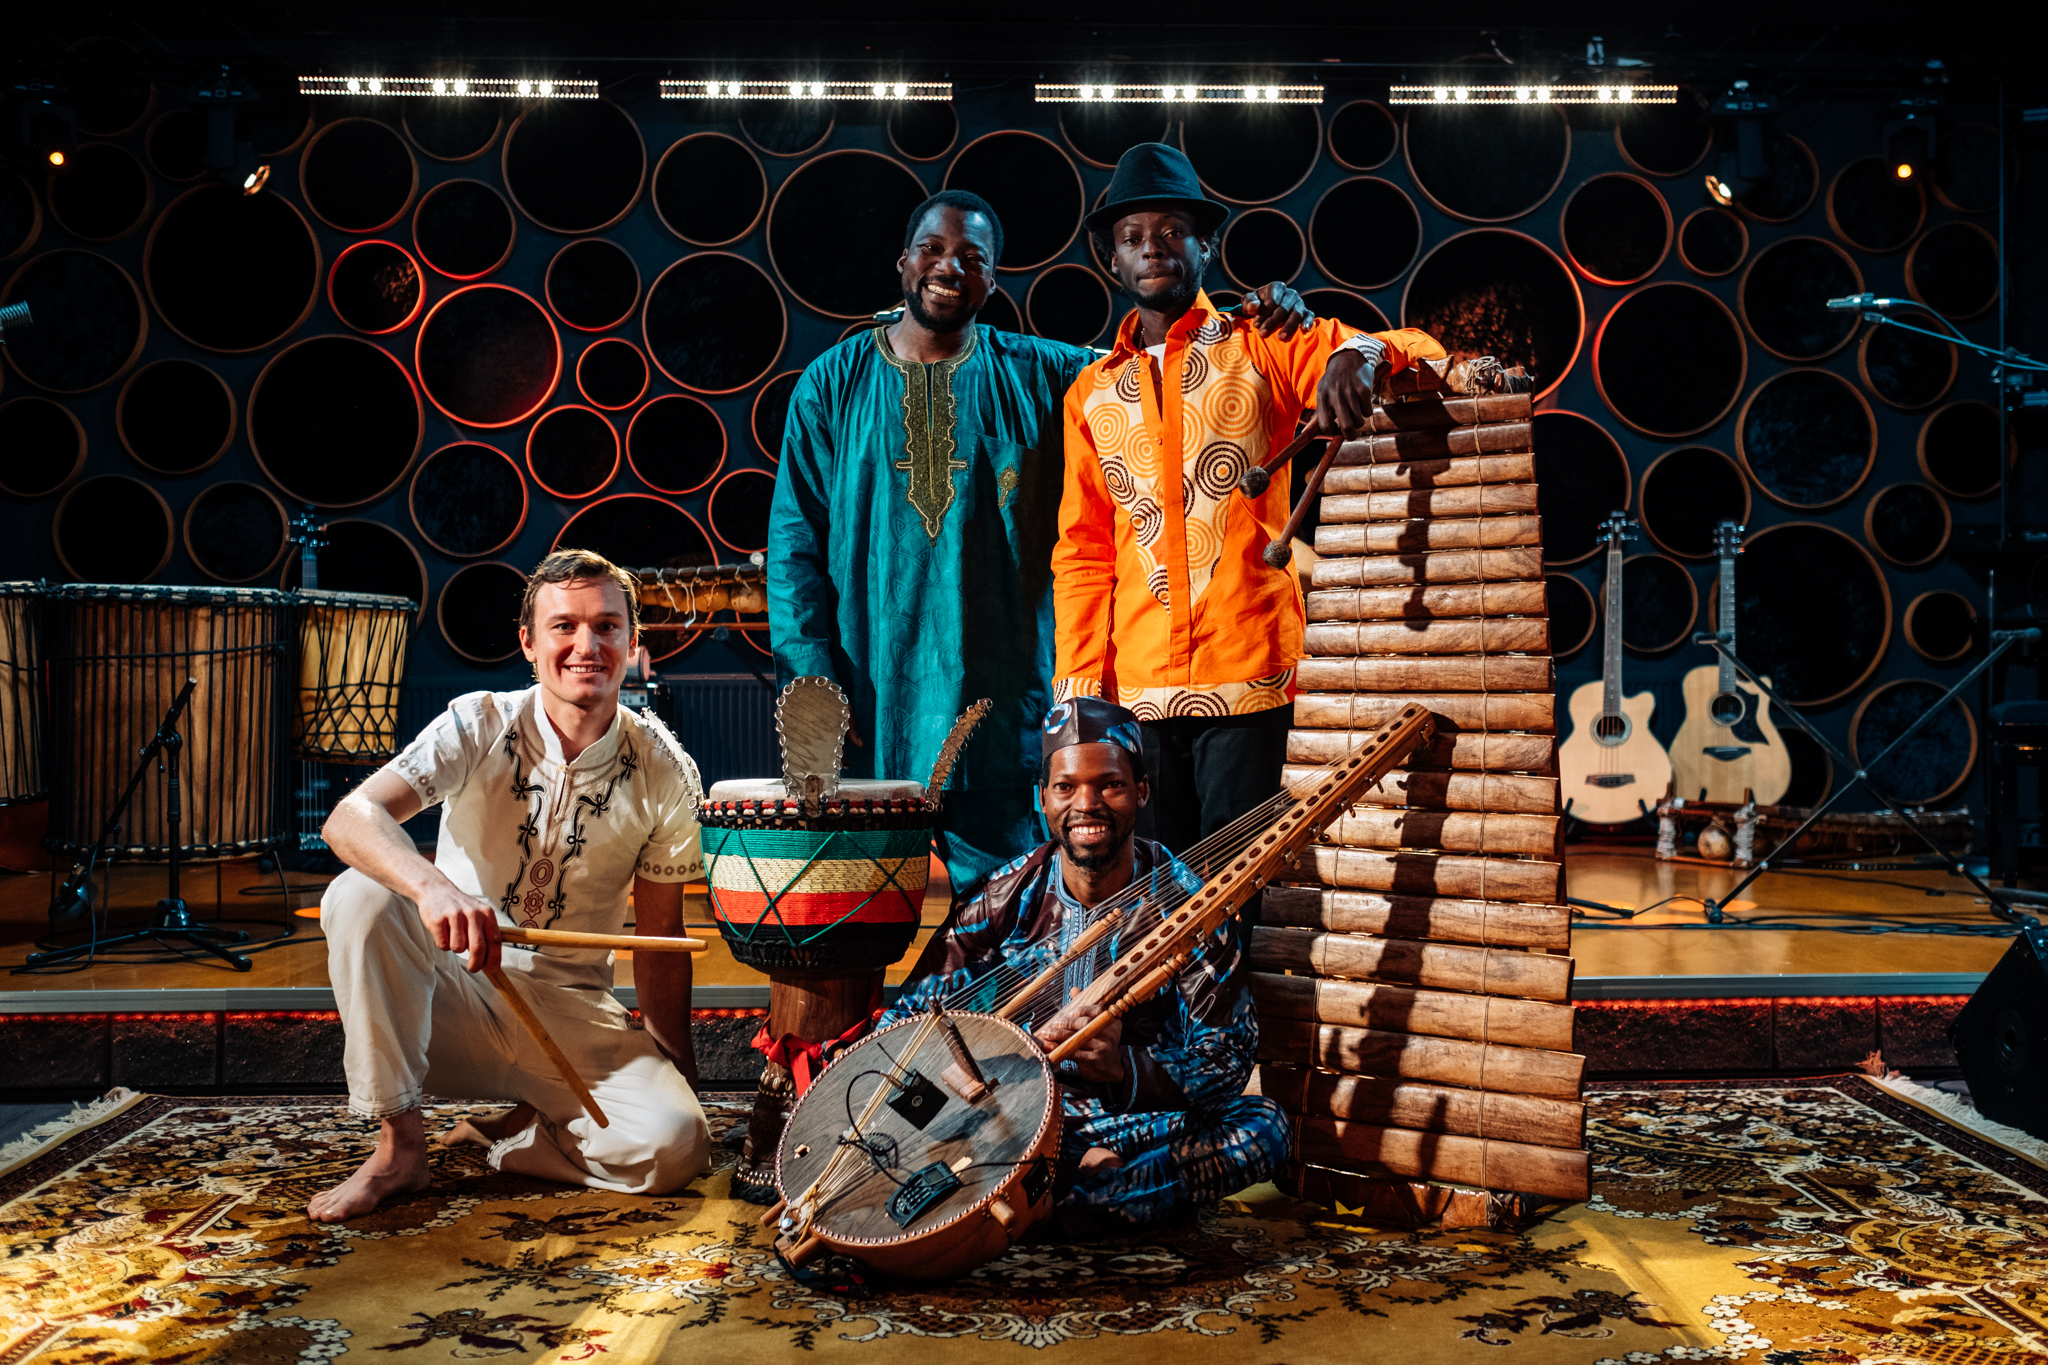 Kuvassa neljä muusikkoa yhdessä afrikkalaisten puusoittimien keskellä.